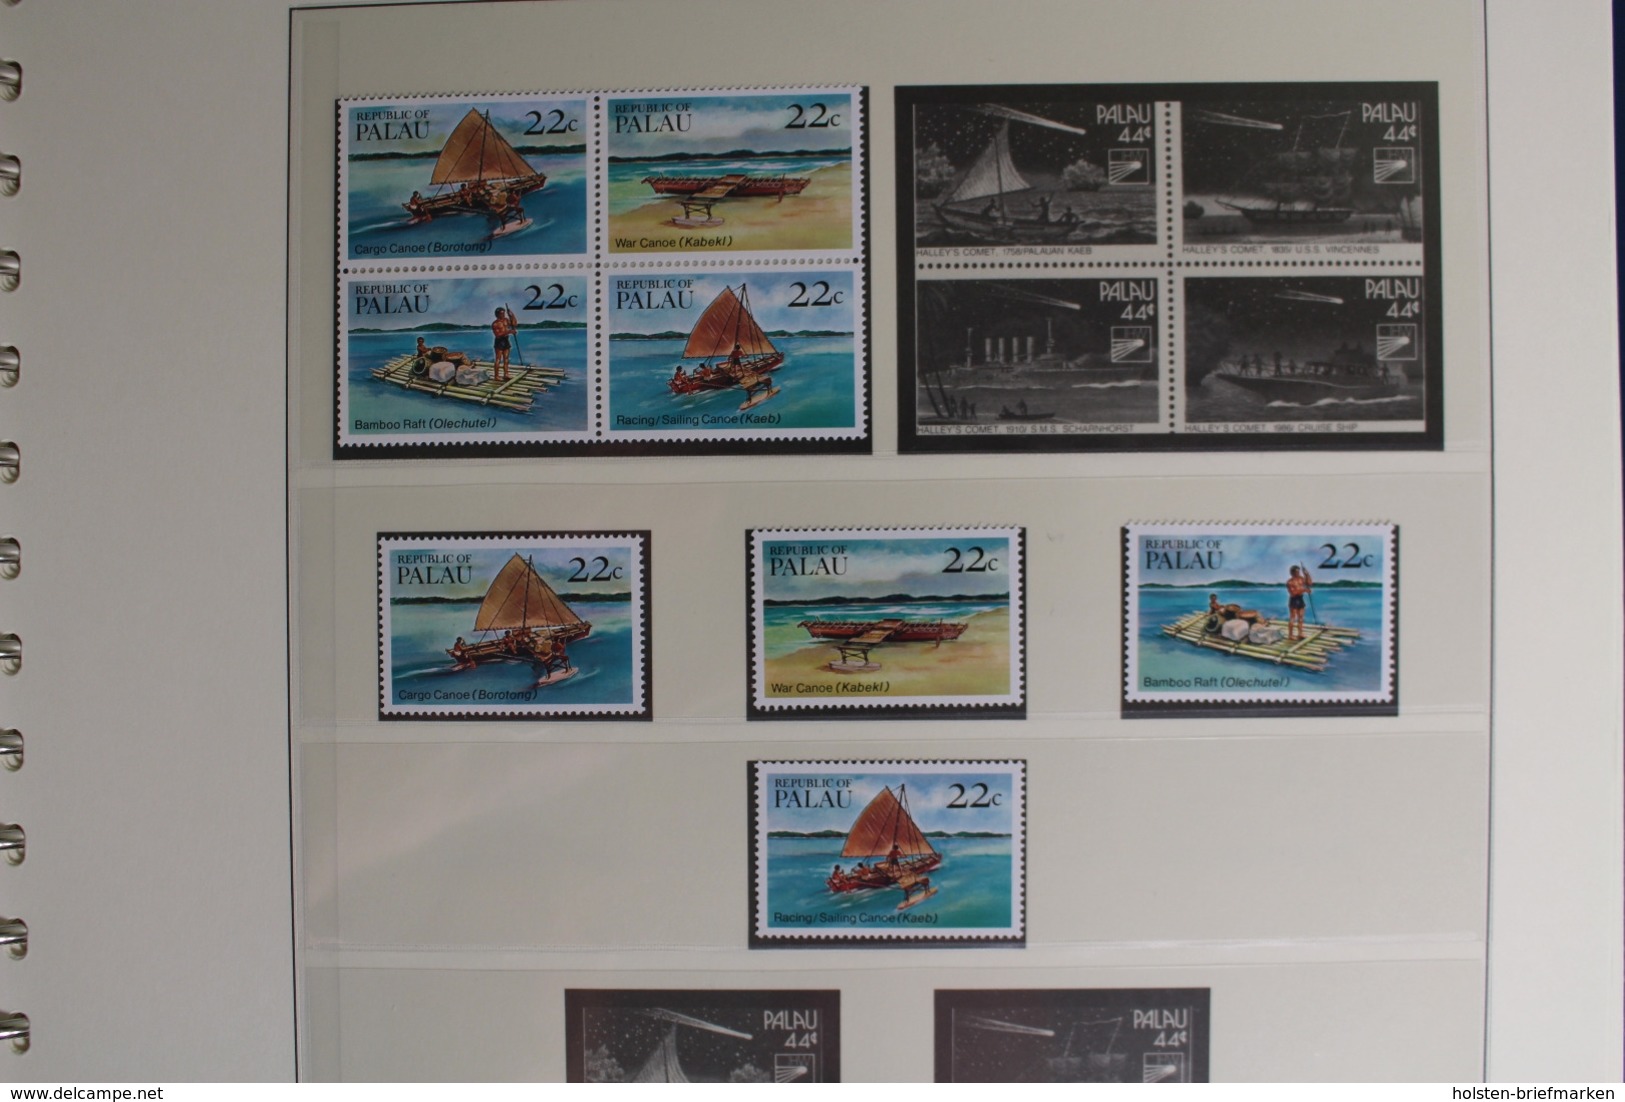 Palau 1983-1991, postfrische Sammlung im Lindner Vordruck